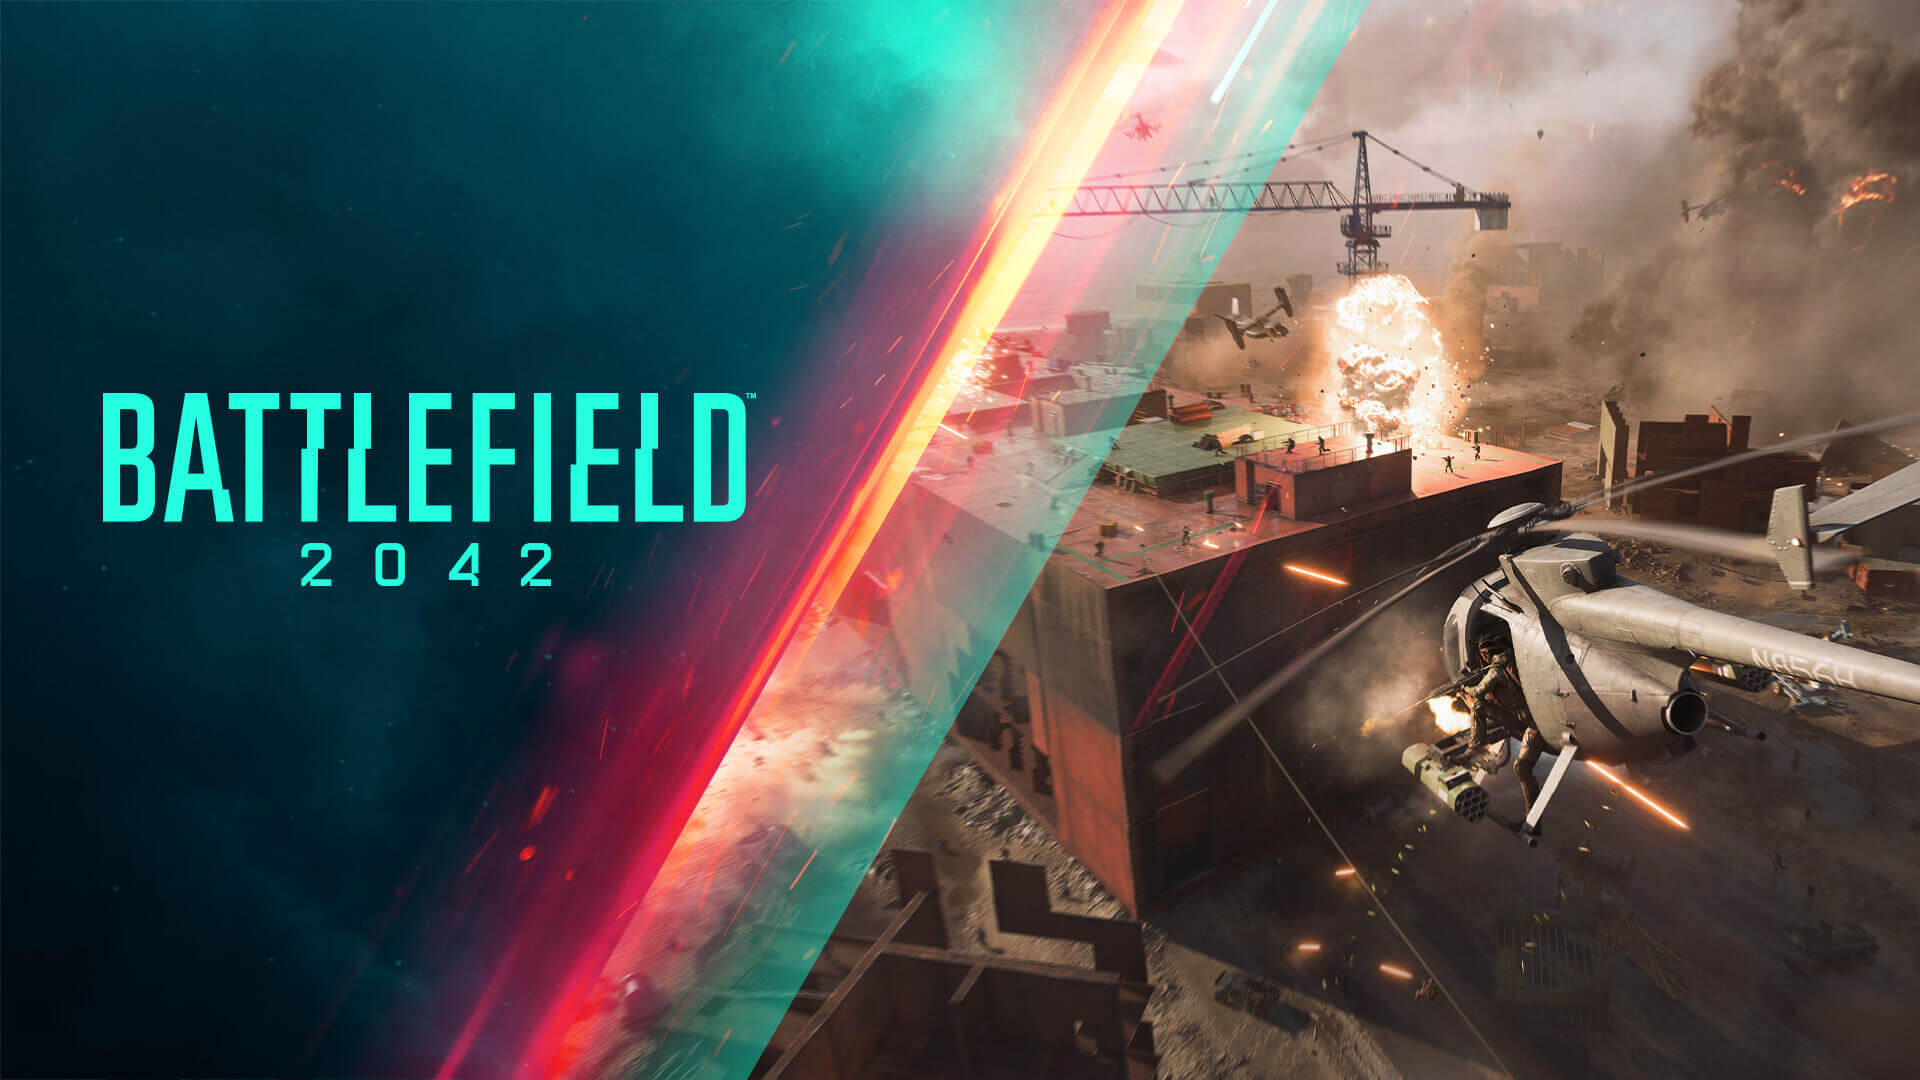 پشتیبانی Battlefield 2042 از فناوری DLSS و Reflex انویدیا 